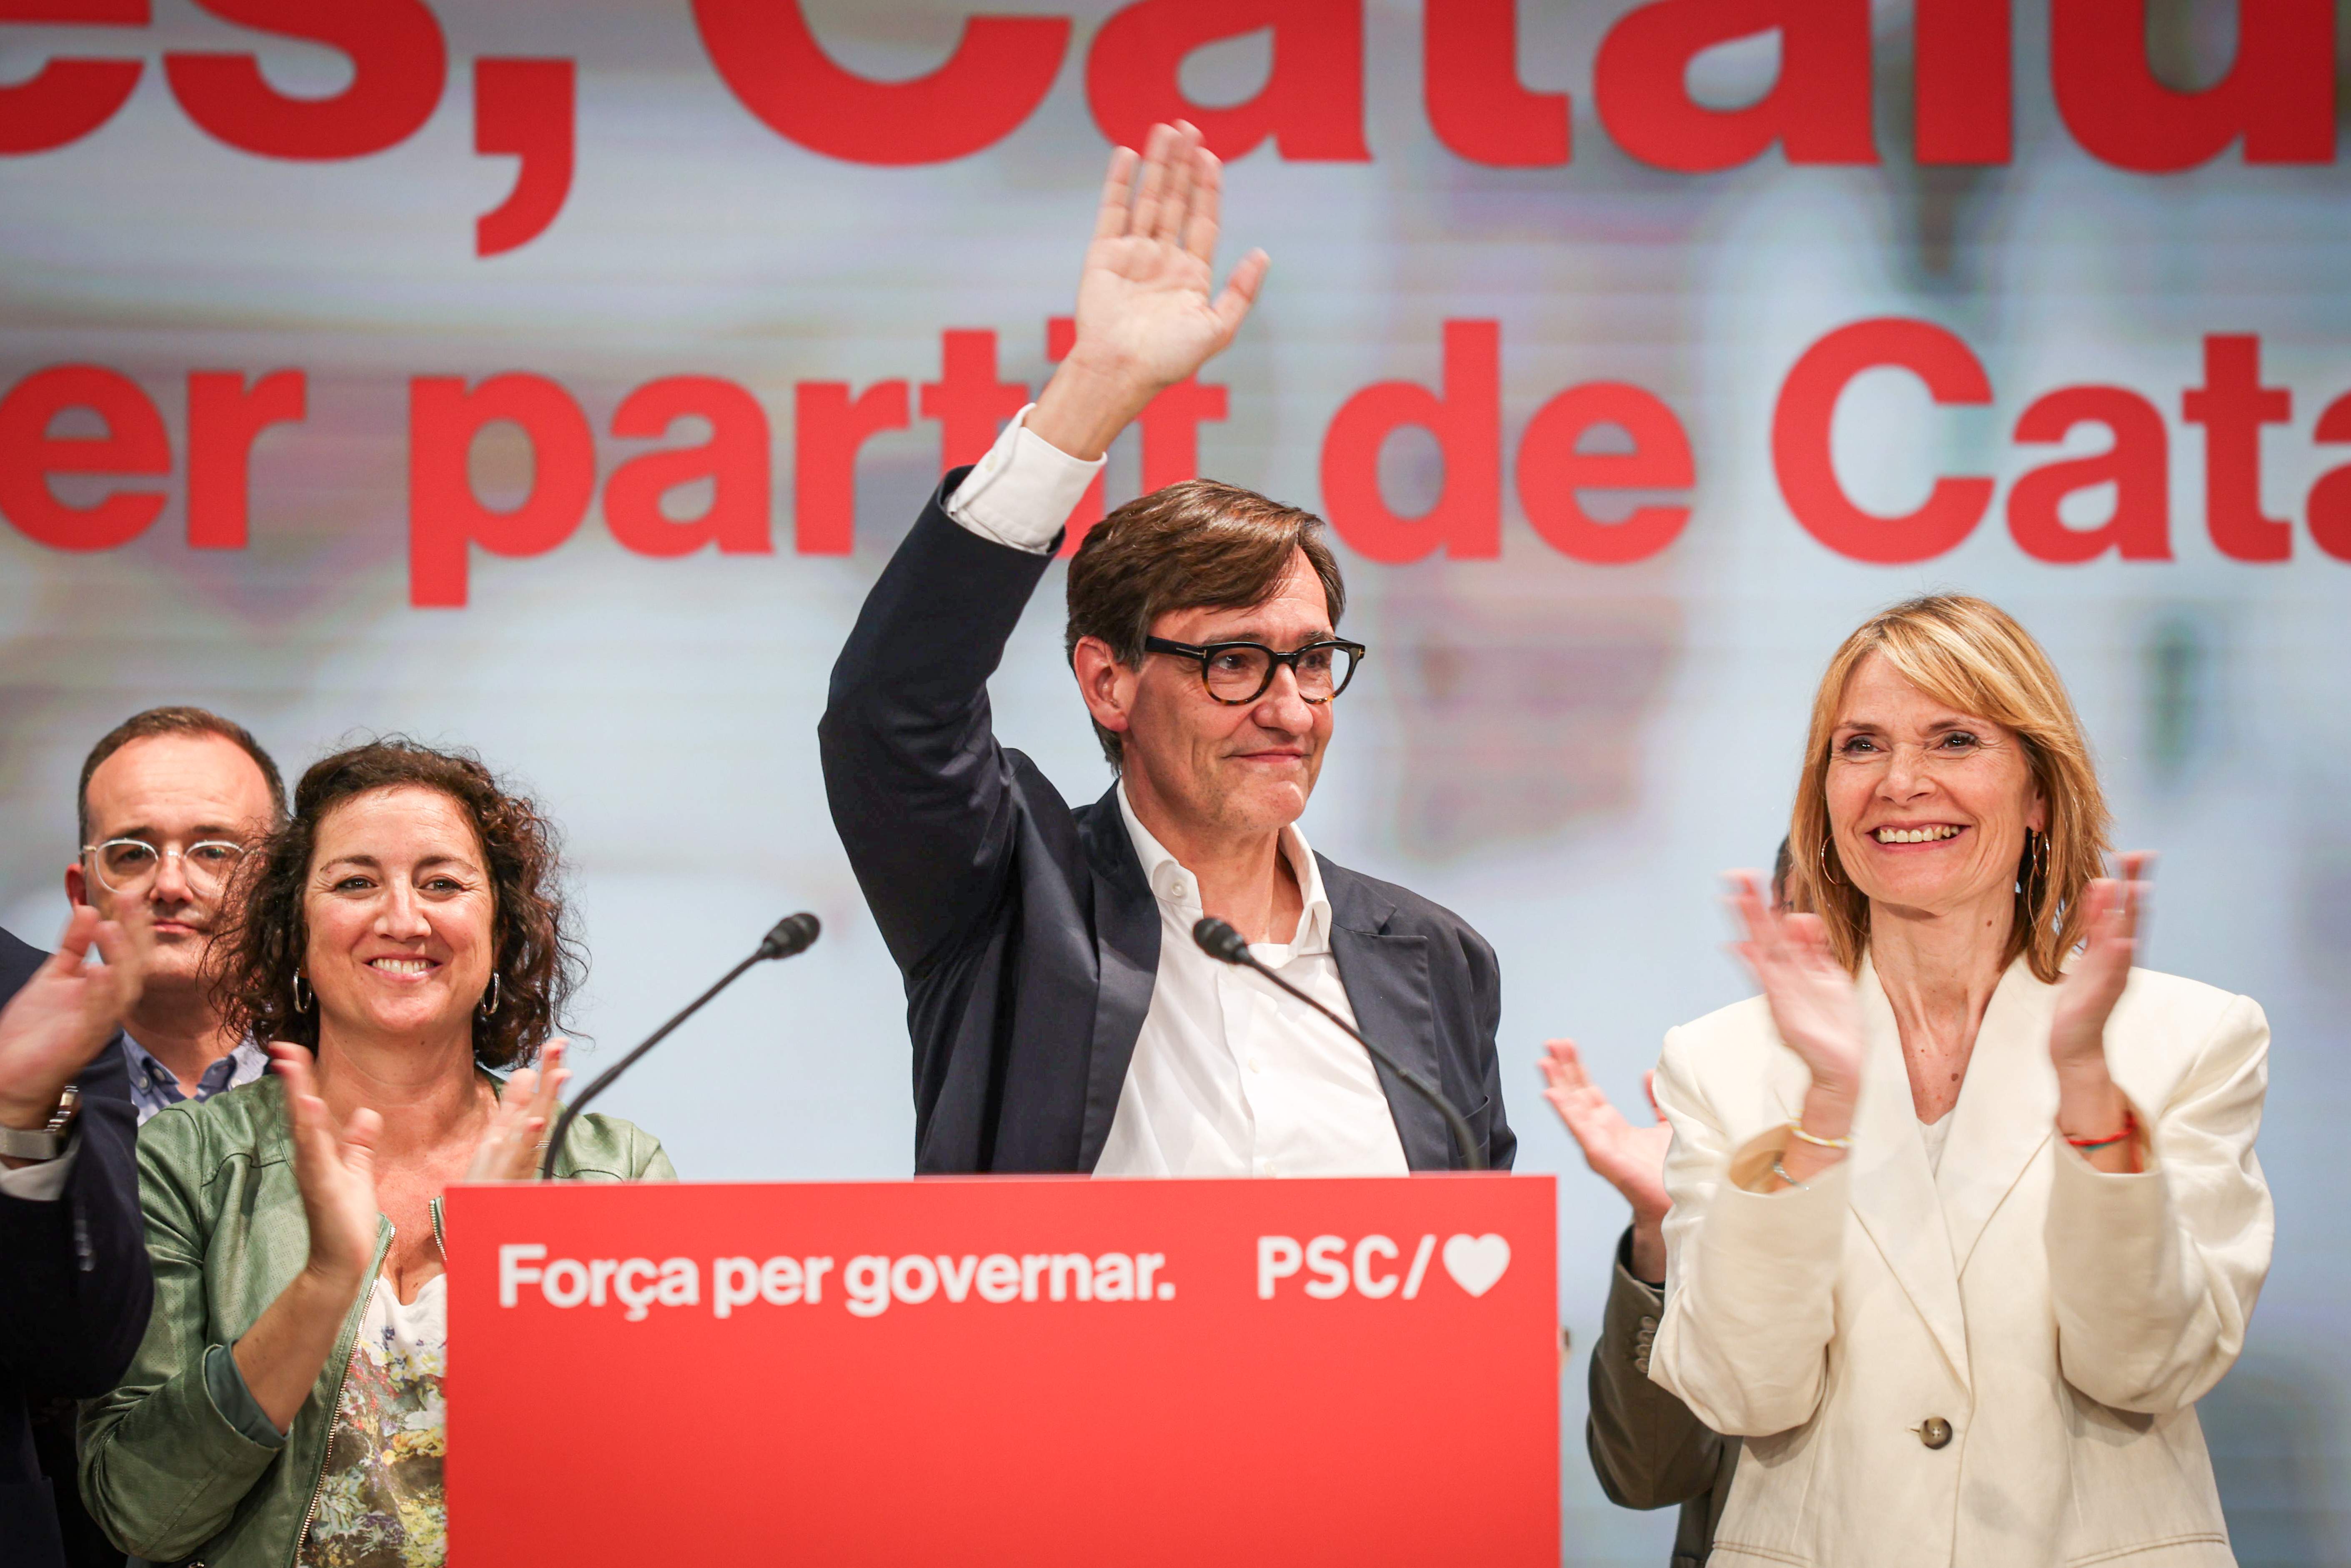 Illa critica que el PP parli de Catalunya a la campanya del 9-J: "Ara hem de parlar d'Europa"